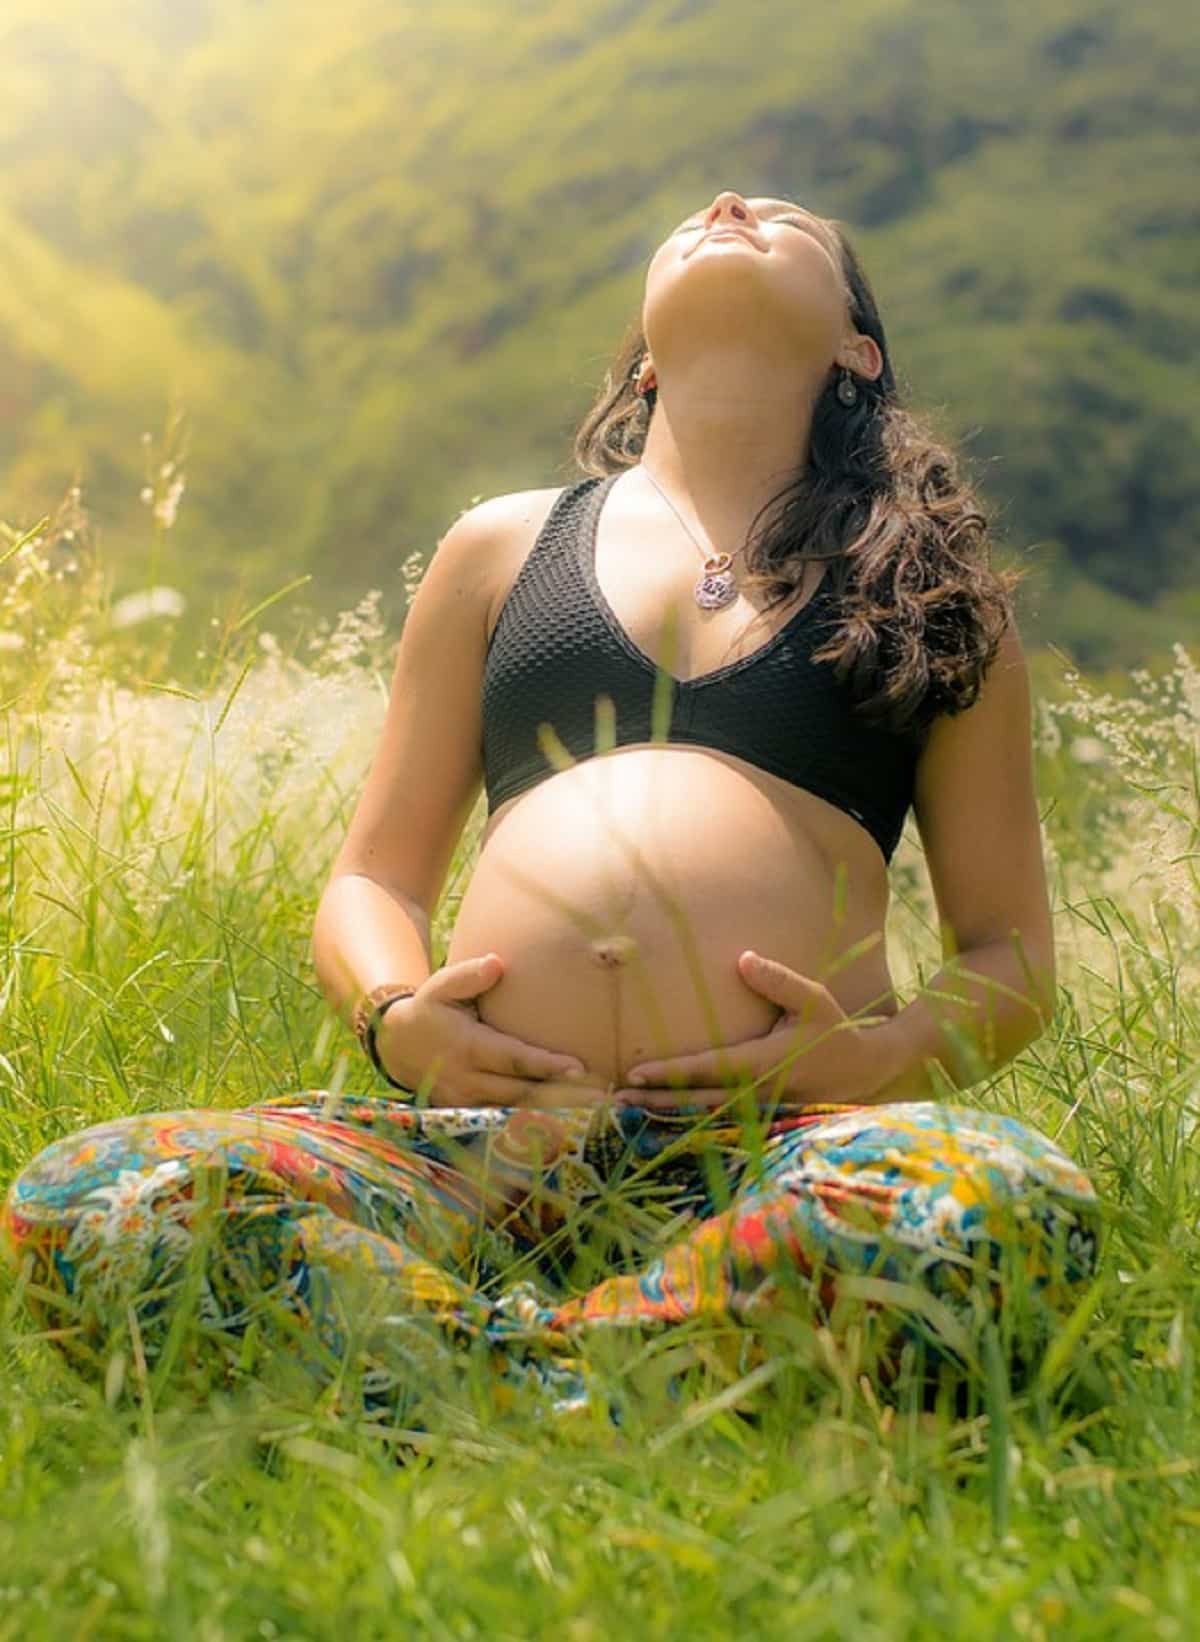 Tomar sol durante el embarazo tiene riesgos y beneficios, debes conocer ambos para hacerlo de la manera adecuada y sea saludable.